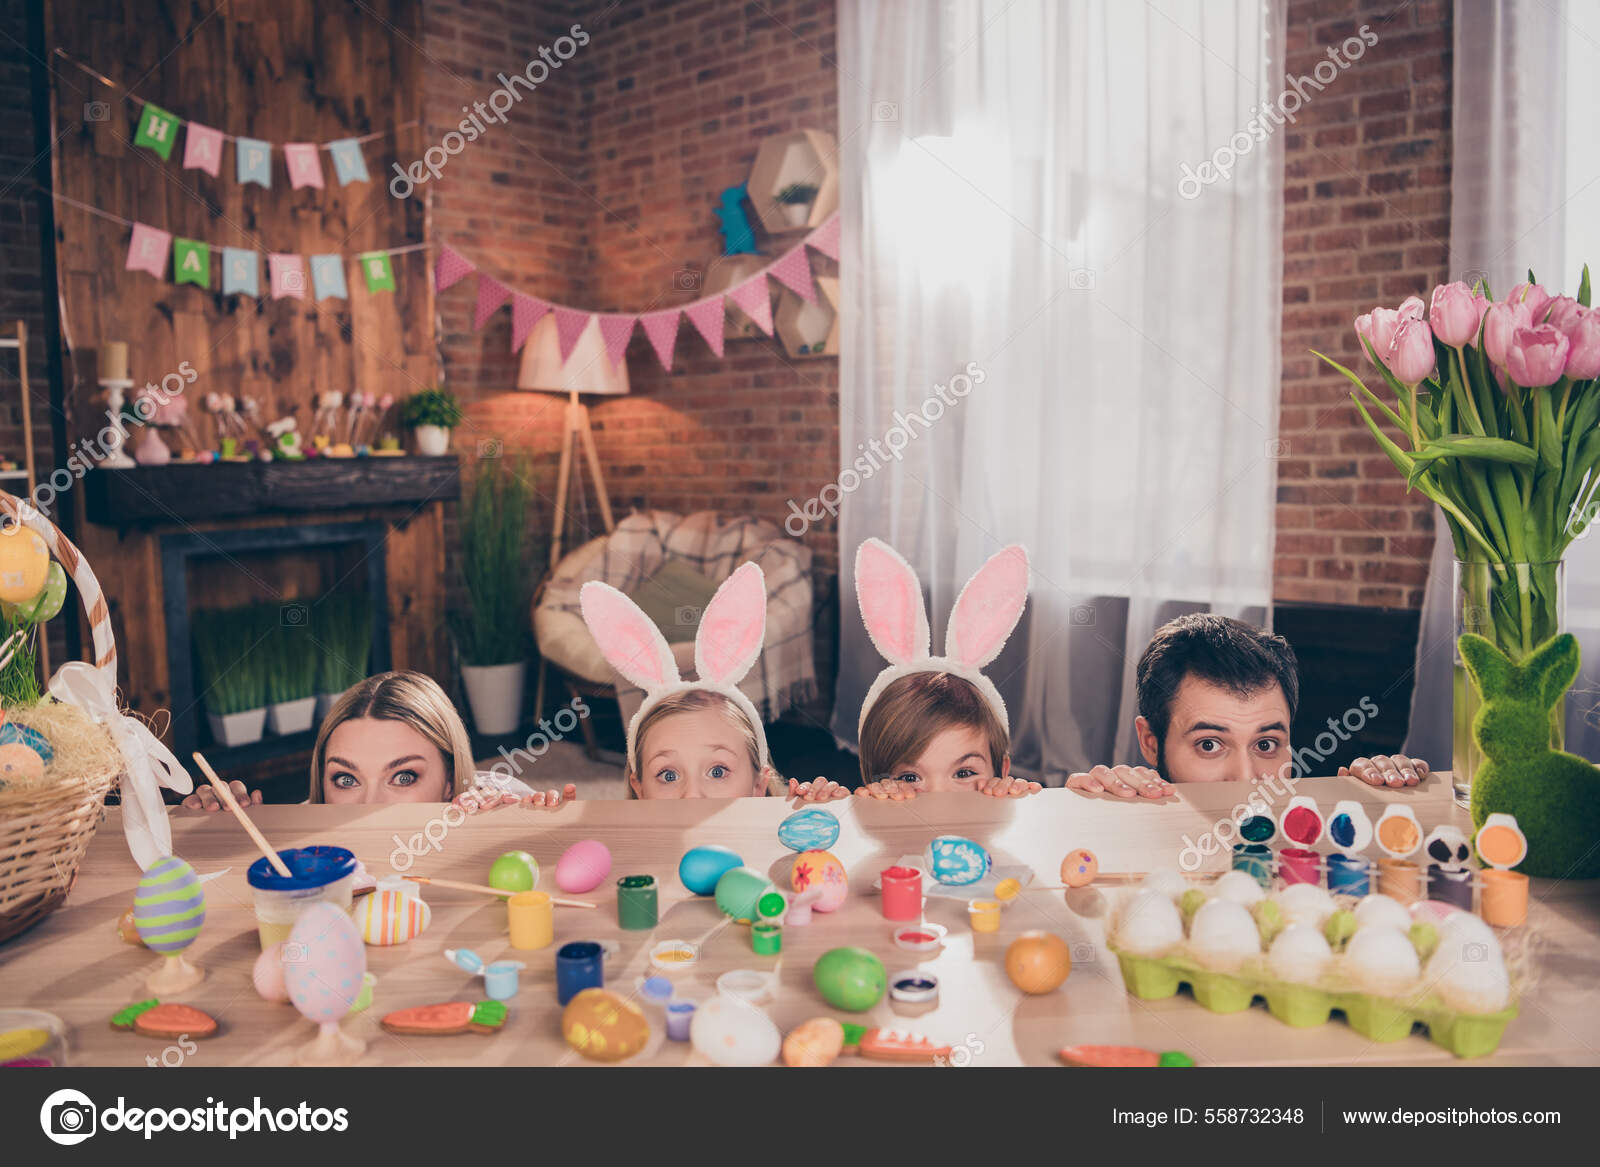 Retrato de familia alegre atractiva dibujo huevos divertirse escondido  detrás de escritorio creativo afición doméstica buen humor en el interior:  fotografía de stock © deagreez1 #558732348 | Depositphotos